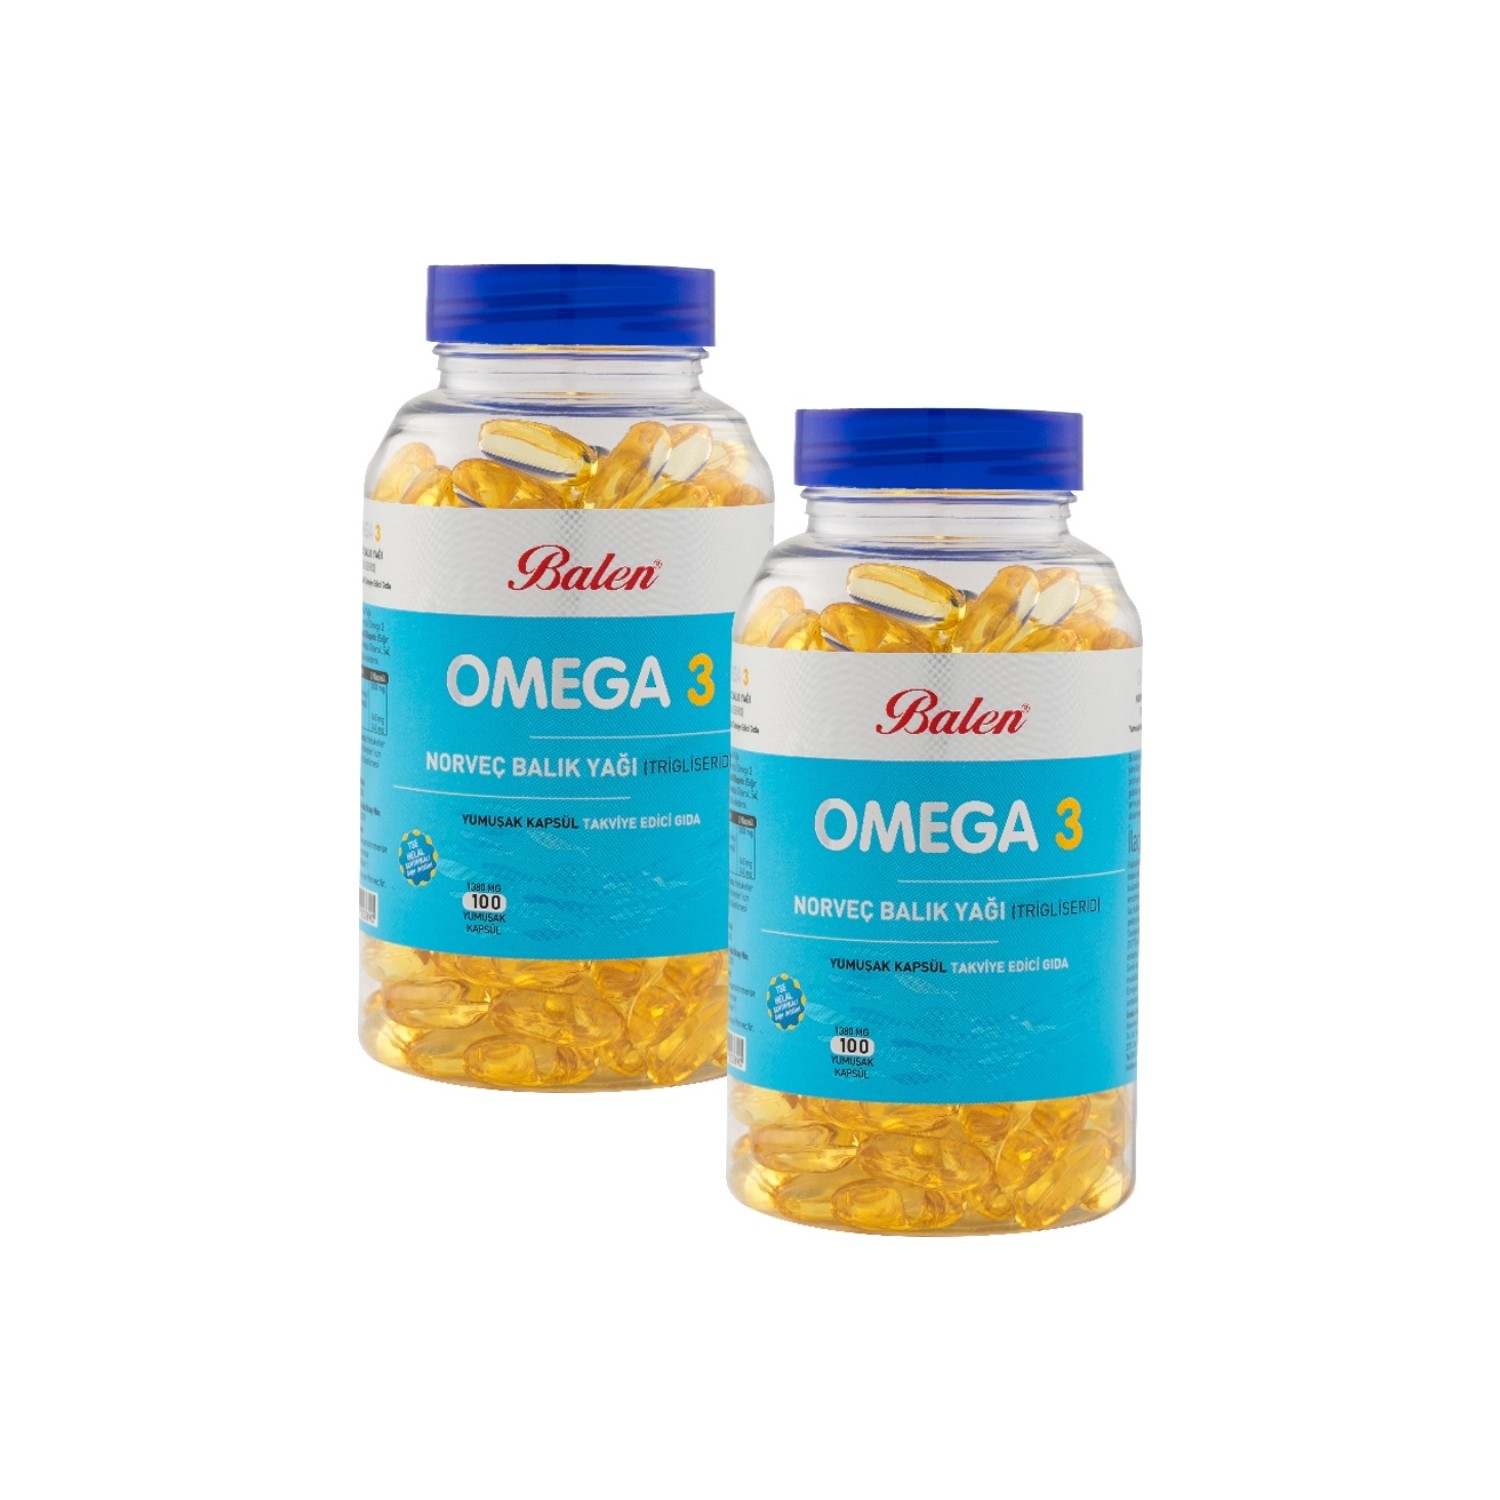 Норвежский рыбий жир Balen Omega-3 (триглицерид) 1380 мг, 2 упаковки по 100 капсул рыбный жир здравсити 100 капсул по 330 мг